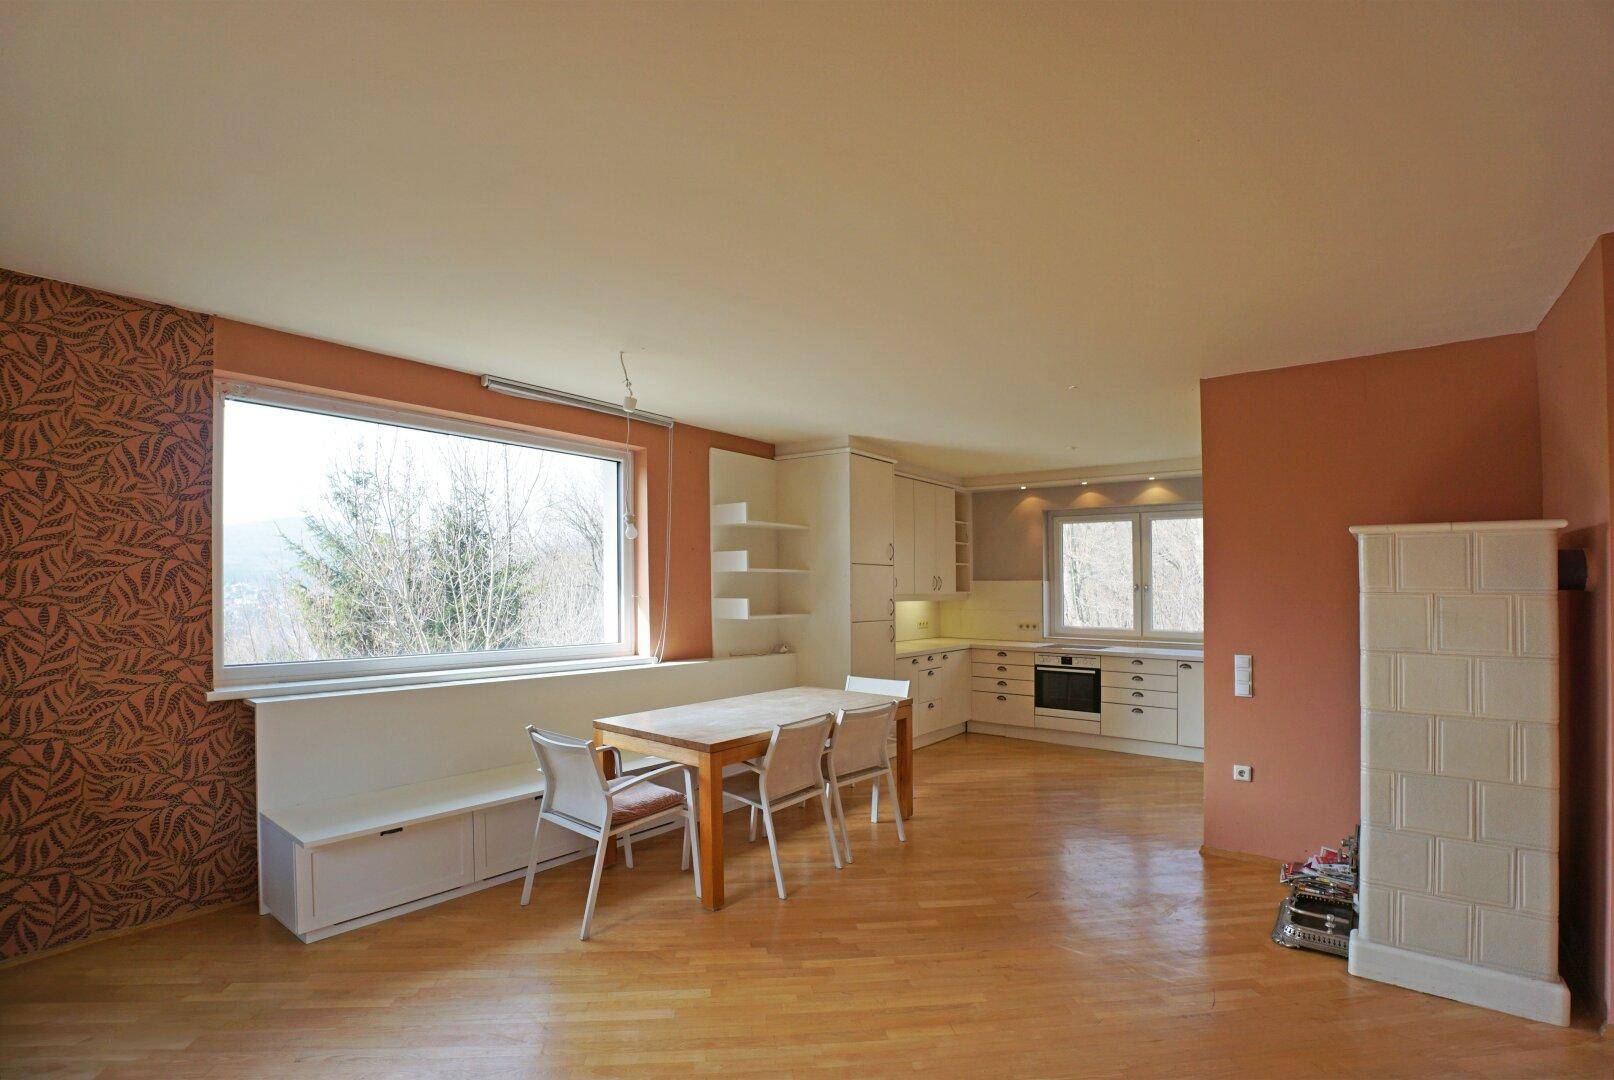 Wohnküche mit Panoramafenster